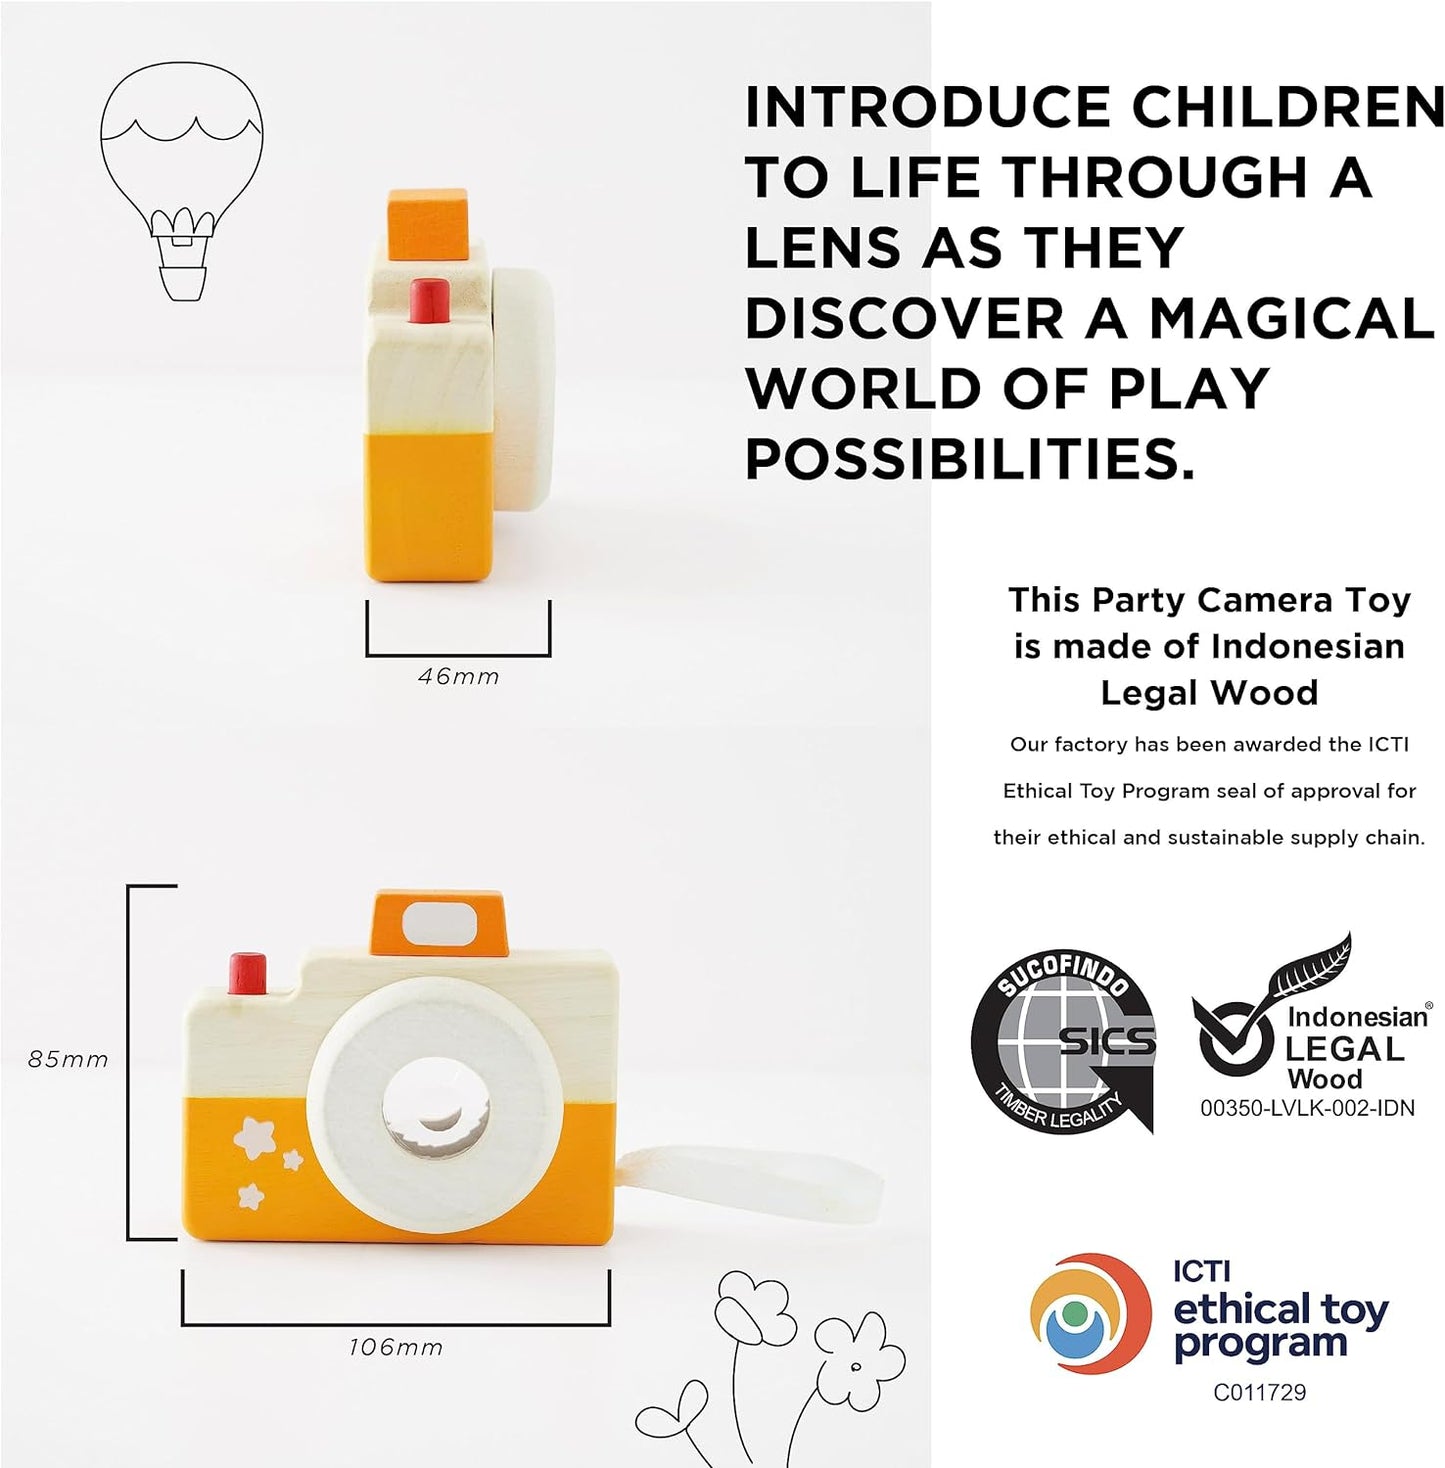 Le Toy Van - Petilou Madeira Educacional Multi-Sensorial Colorido Brinquedo de Binóculos de Madeira para Crianças e Bebês | Adequado para 18 meses +